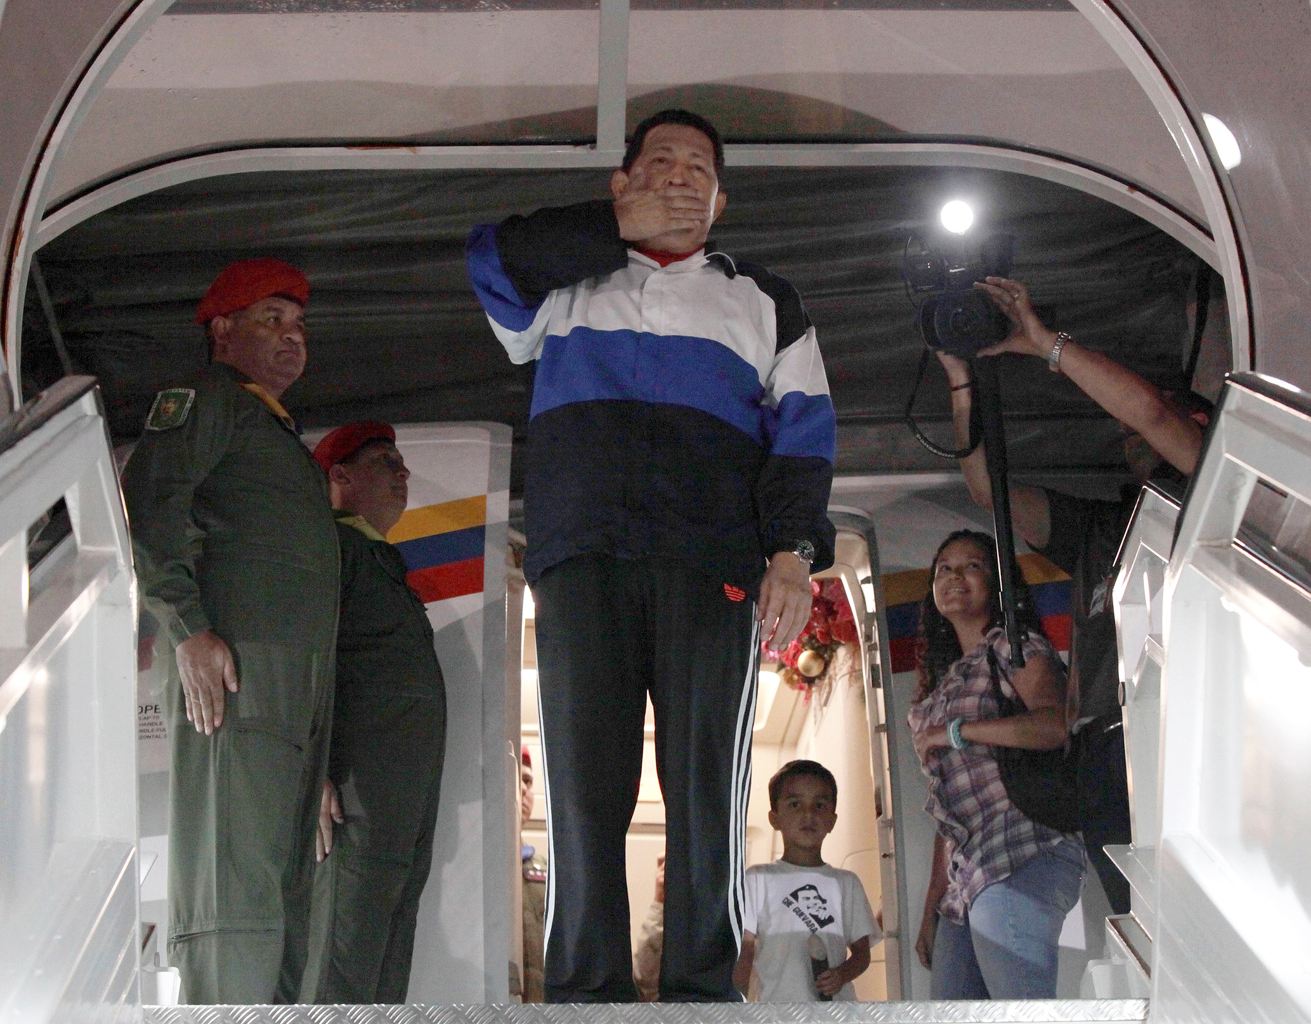 Le "protocole pré-opératoire" d'Hugo Chavez en cours, les médecins "optimistes"